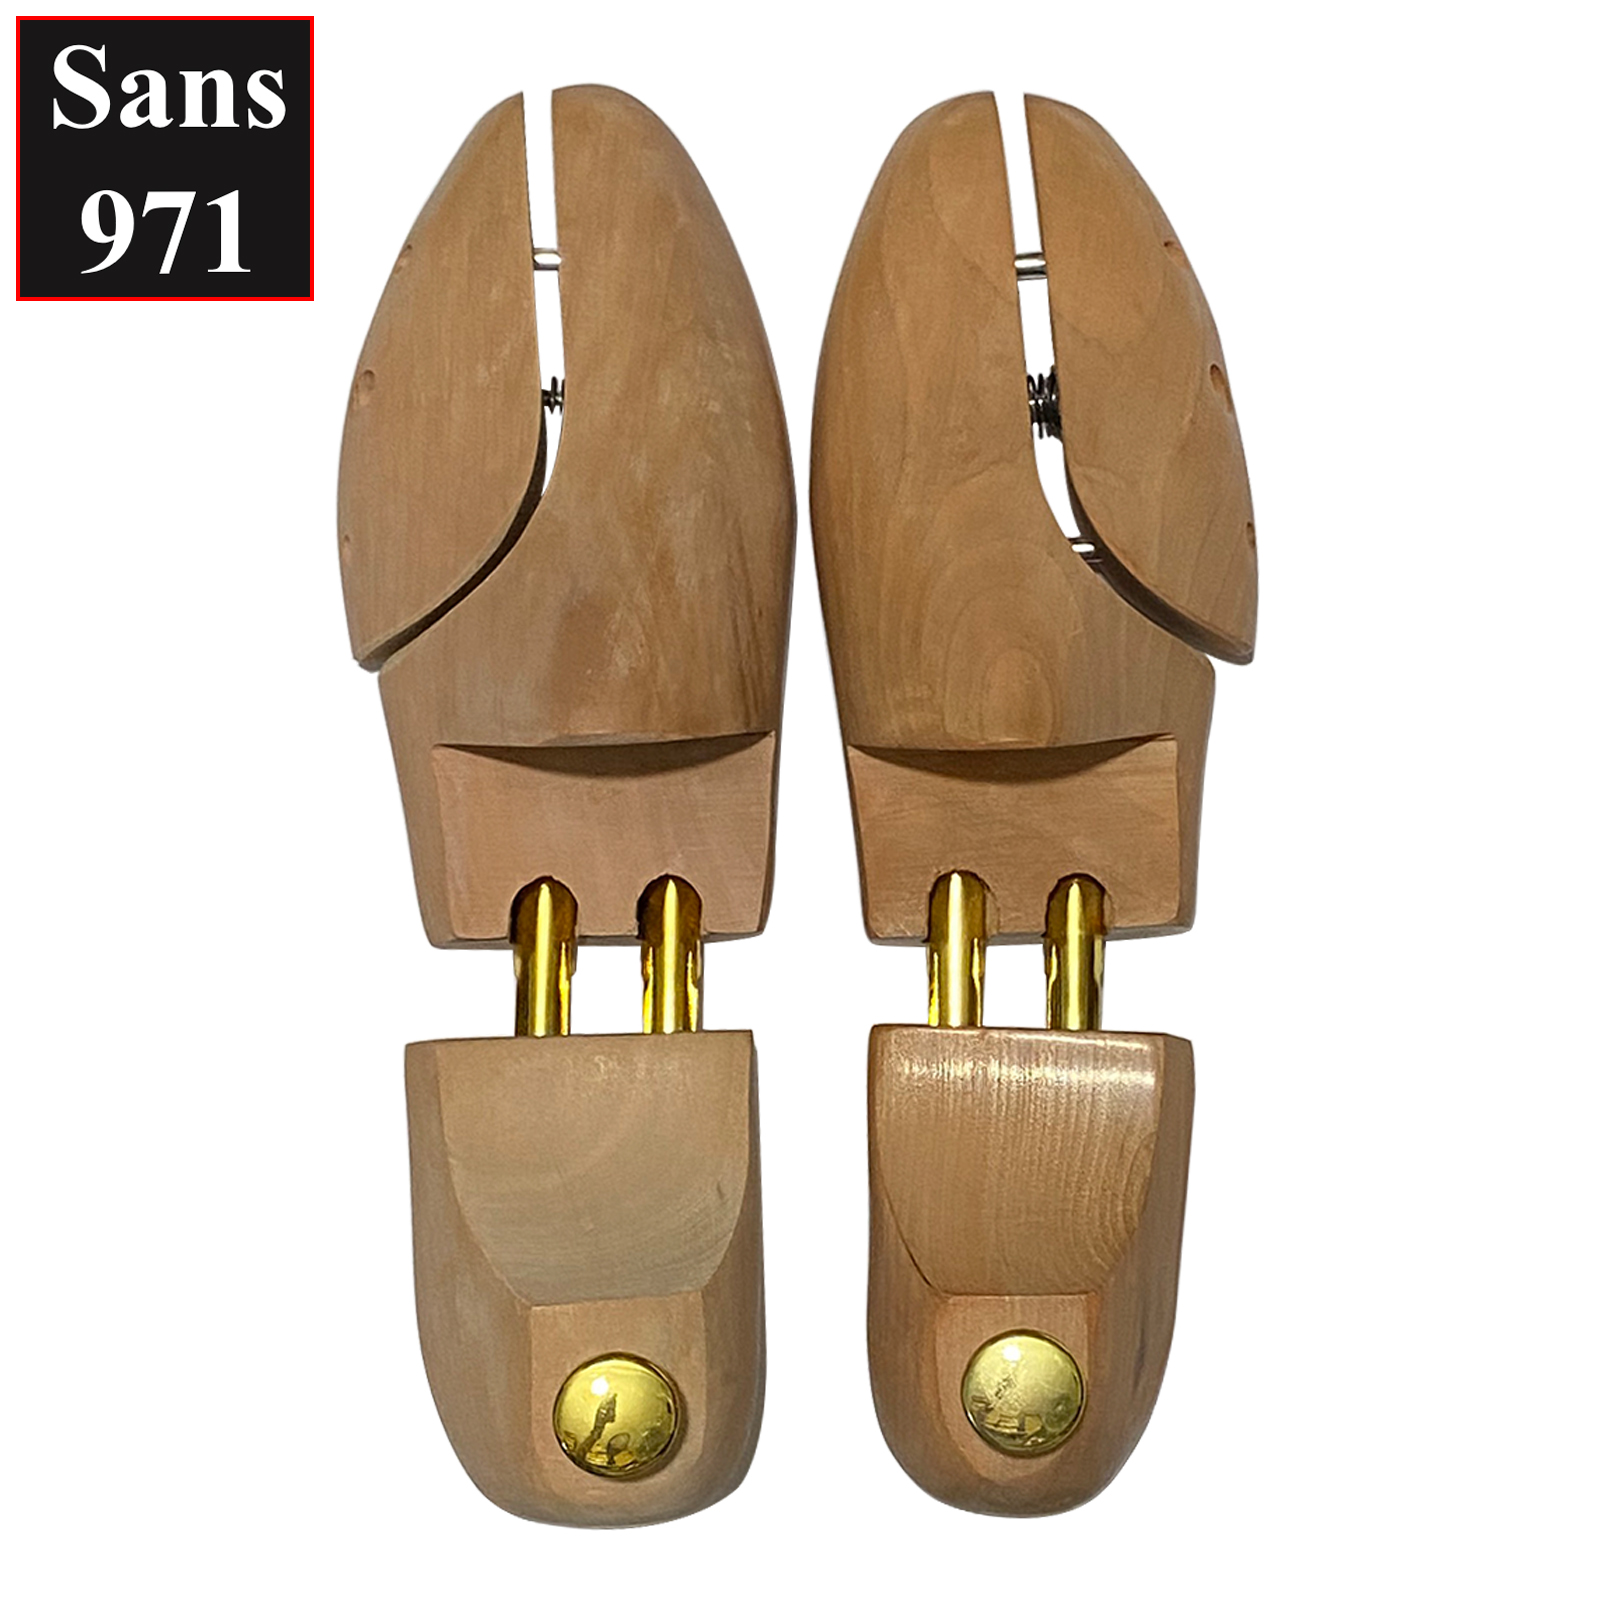 Cây giữ form giày gỗ Sans971 có size dụng cụ bảo vệ giầy shoes tree shoe cao cấp